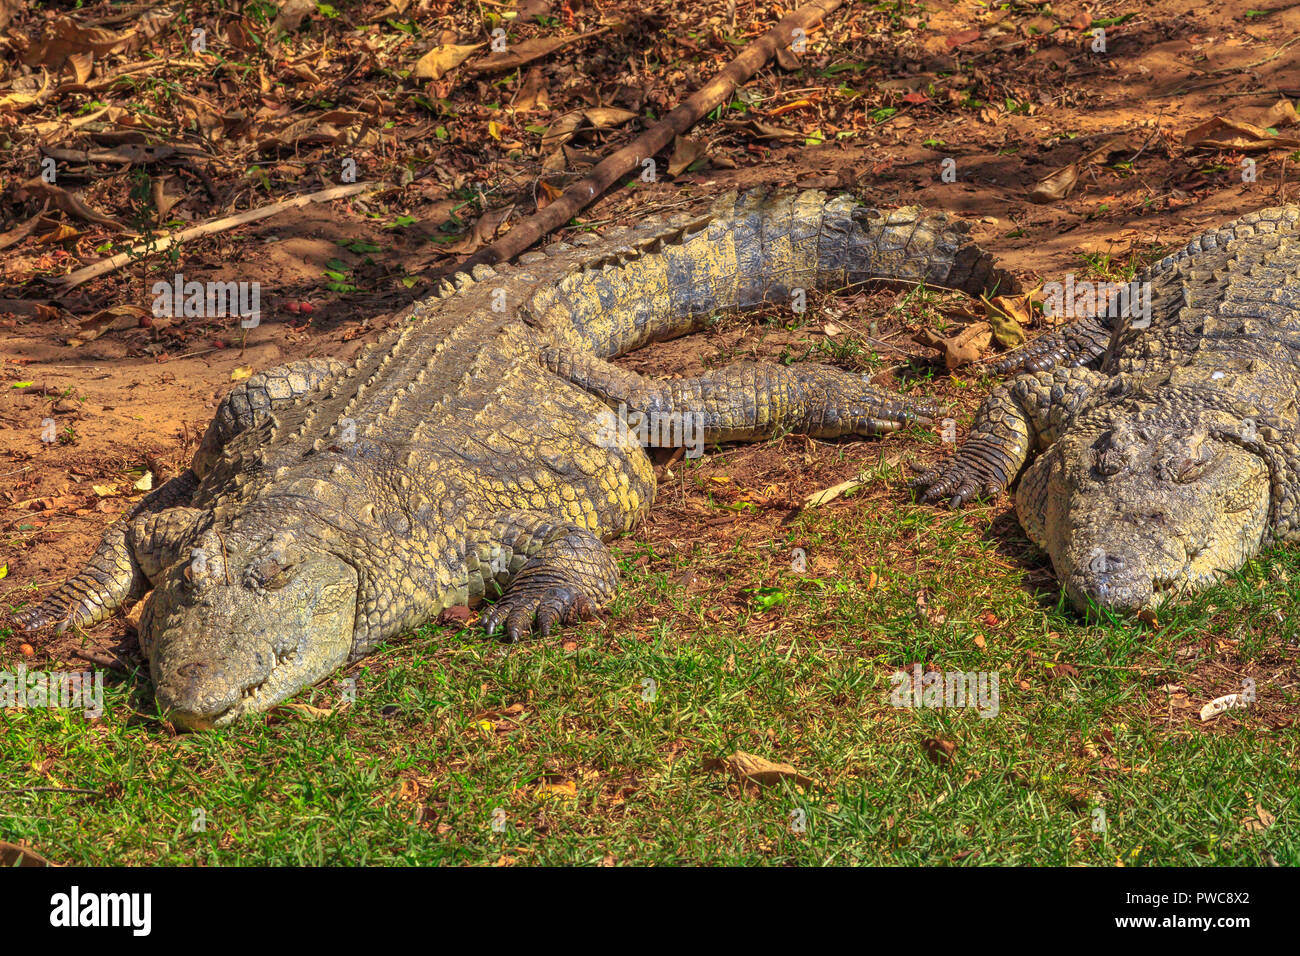 Zwei afrikanische Krokodile Art Crocodylus niloticus, im iSimangaliso Wetland Park schlafen in St. Lucia Estuary, Südafrika, eines der besten Safari Destinationen. Stockfoto